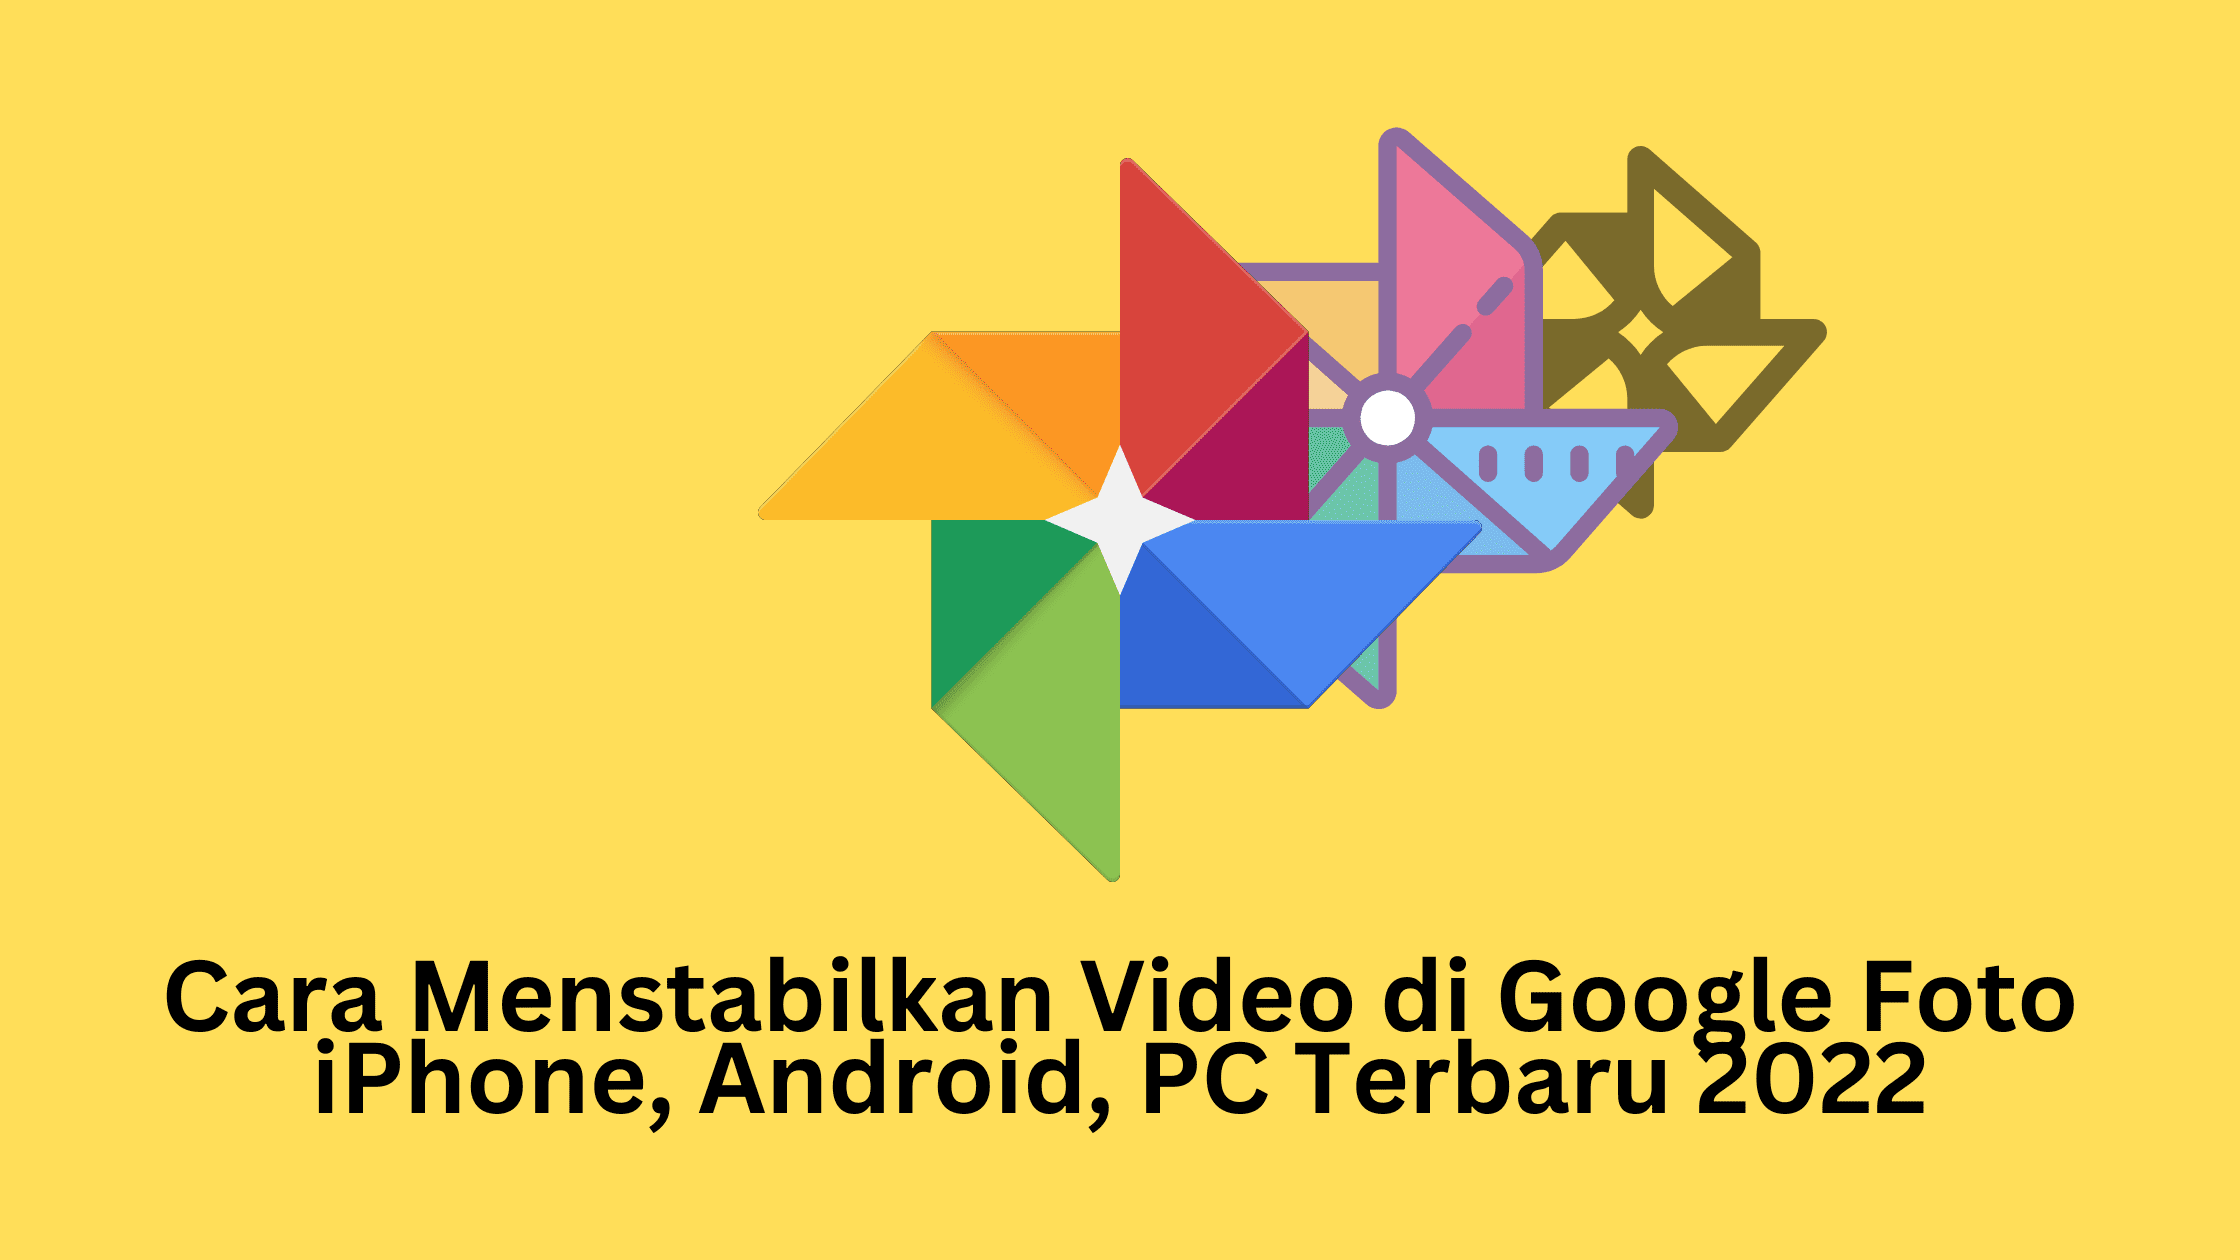 Cara Menstabilkan Video di Google Foto iPhone, Android, PC Terbaru 2022